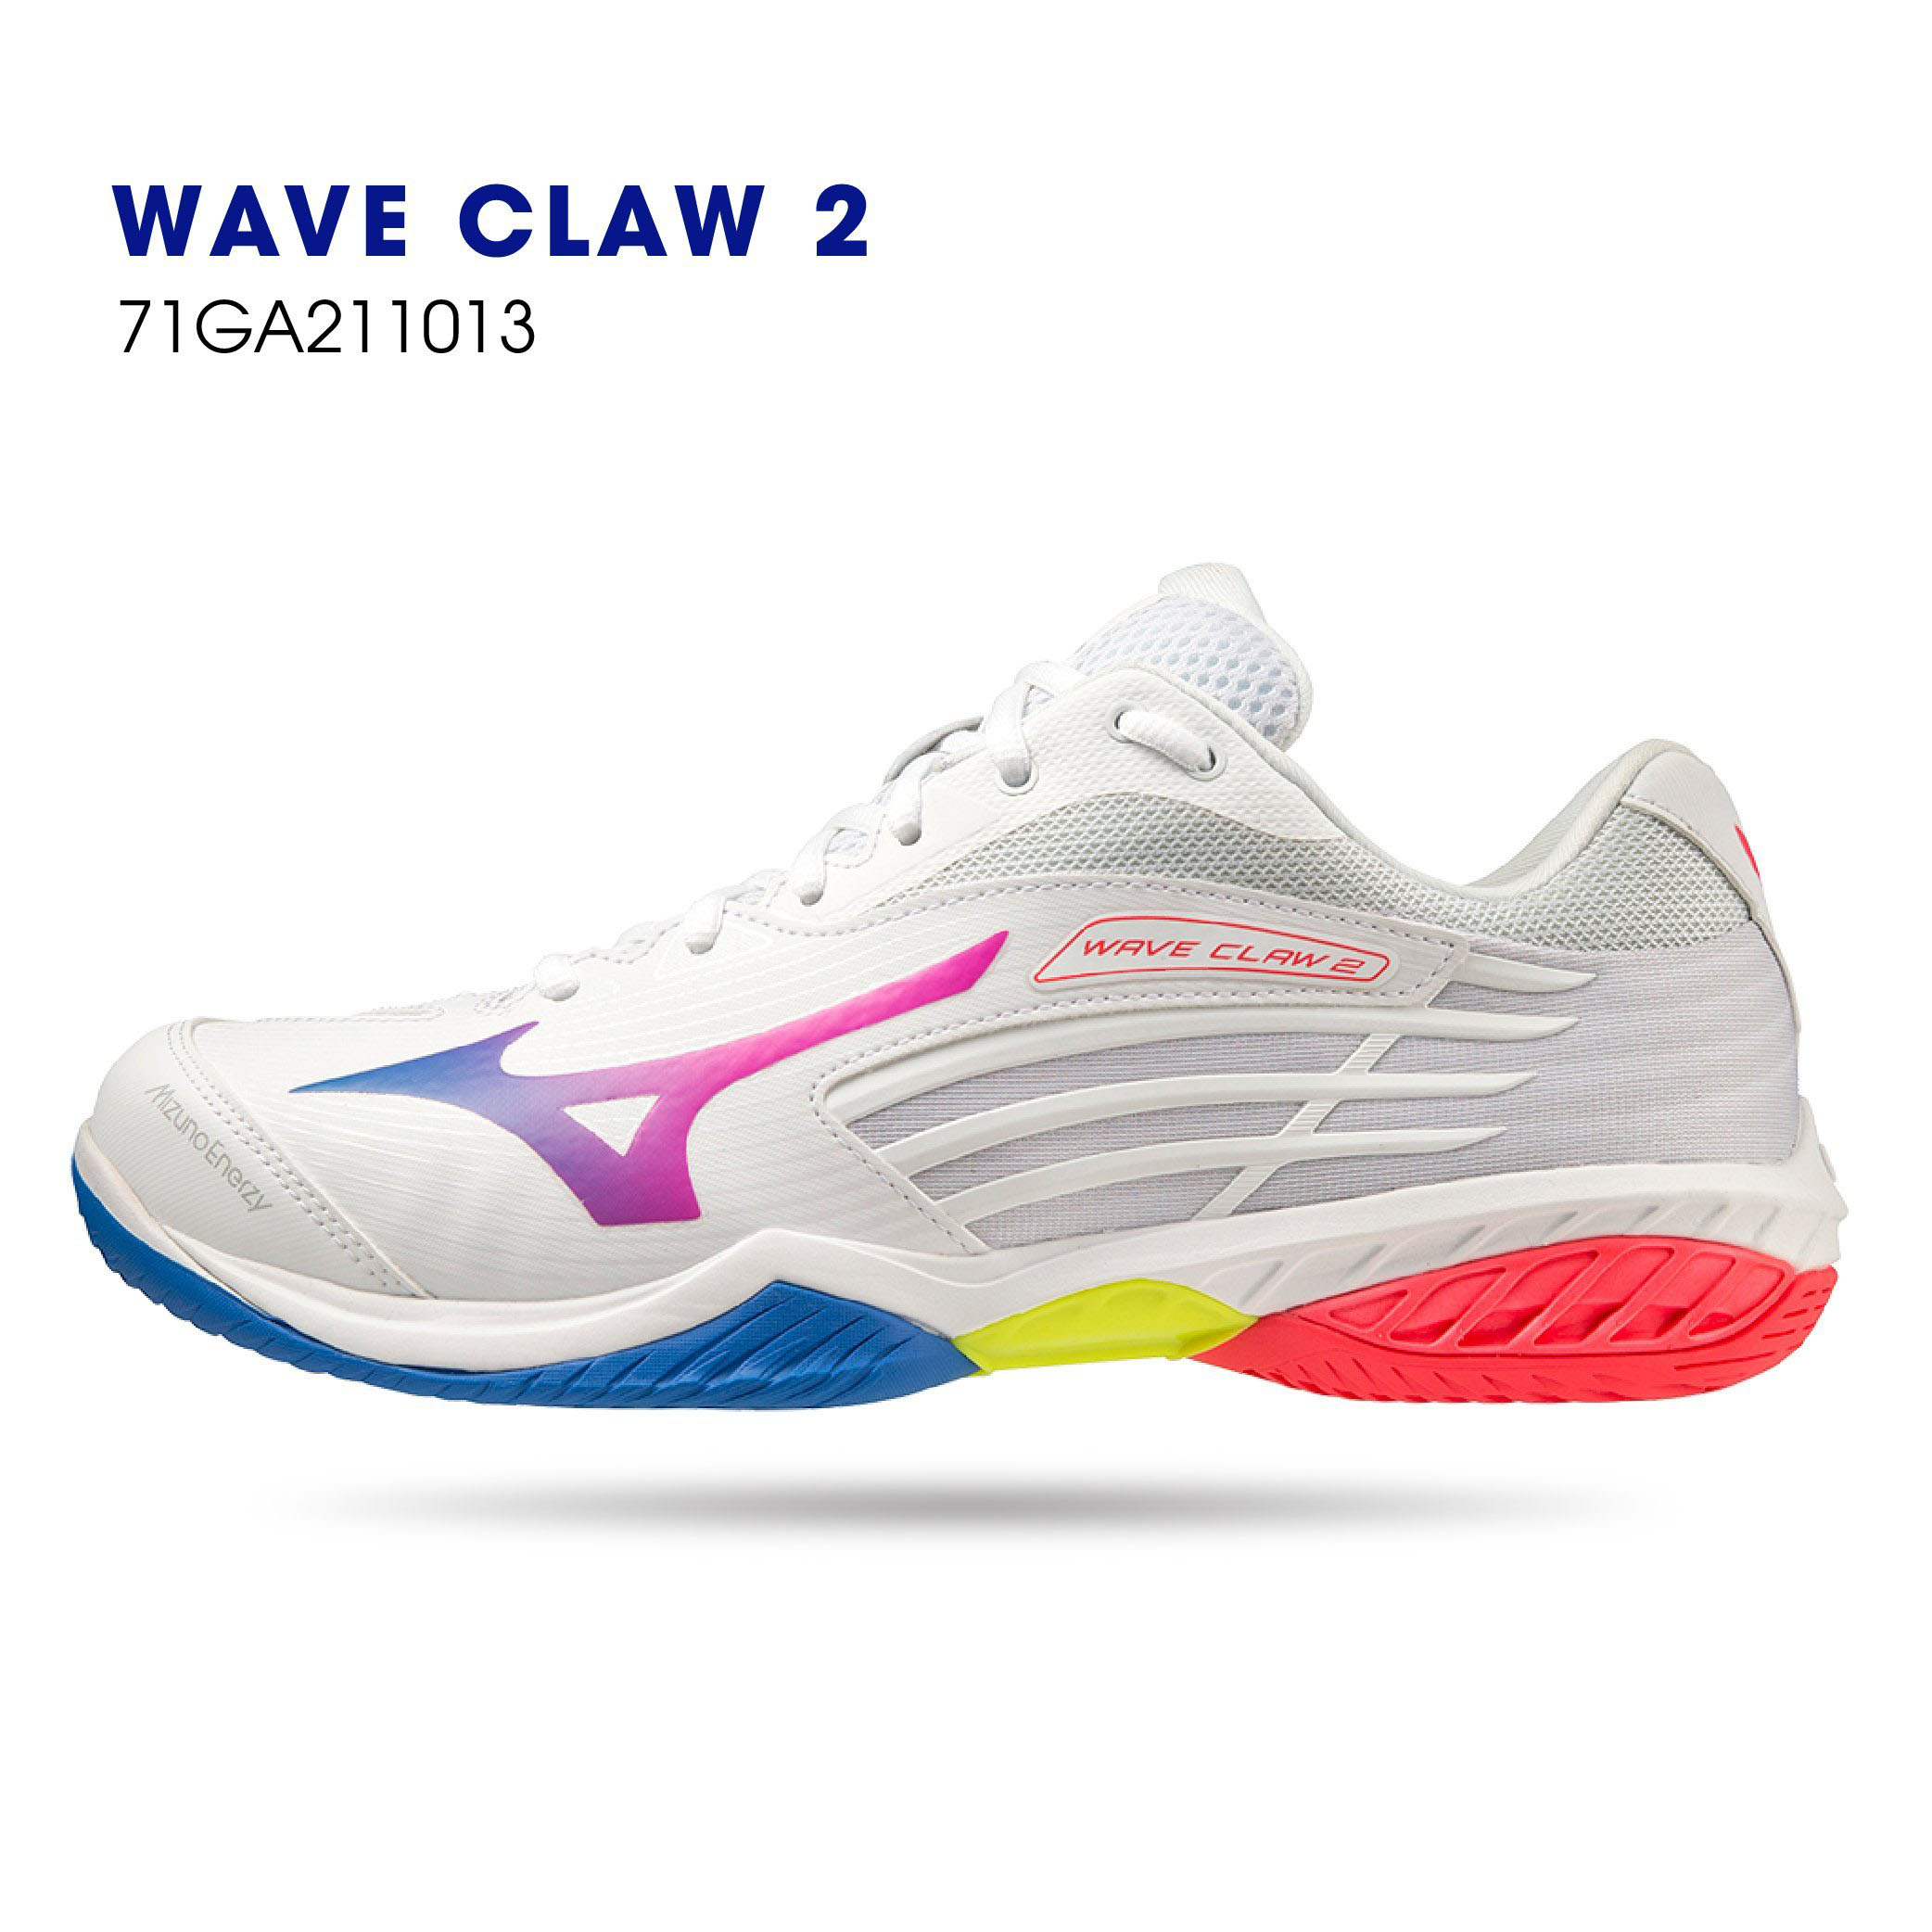 Giày cầu lông chính hãng Mizuno Wave Claw 2 71GA211013 Mẫu mới cho cả nam